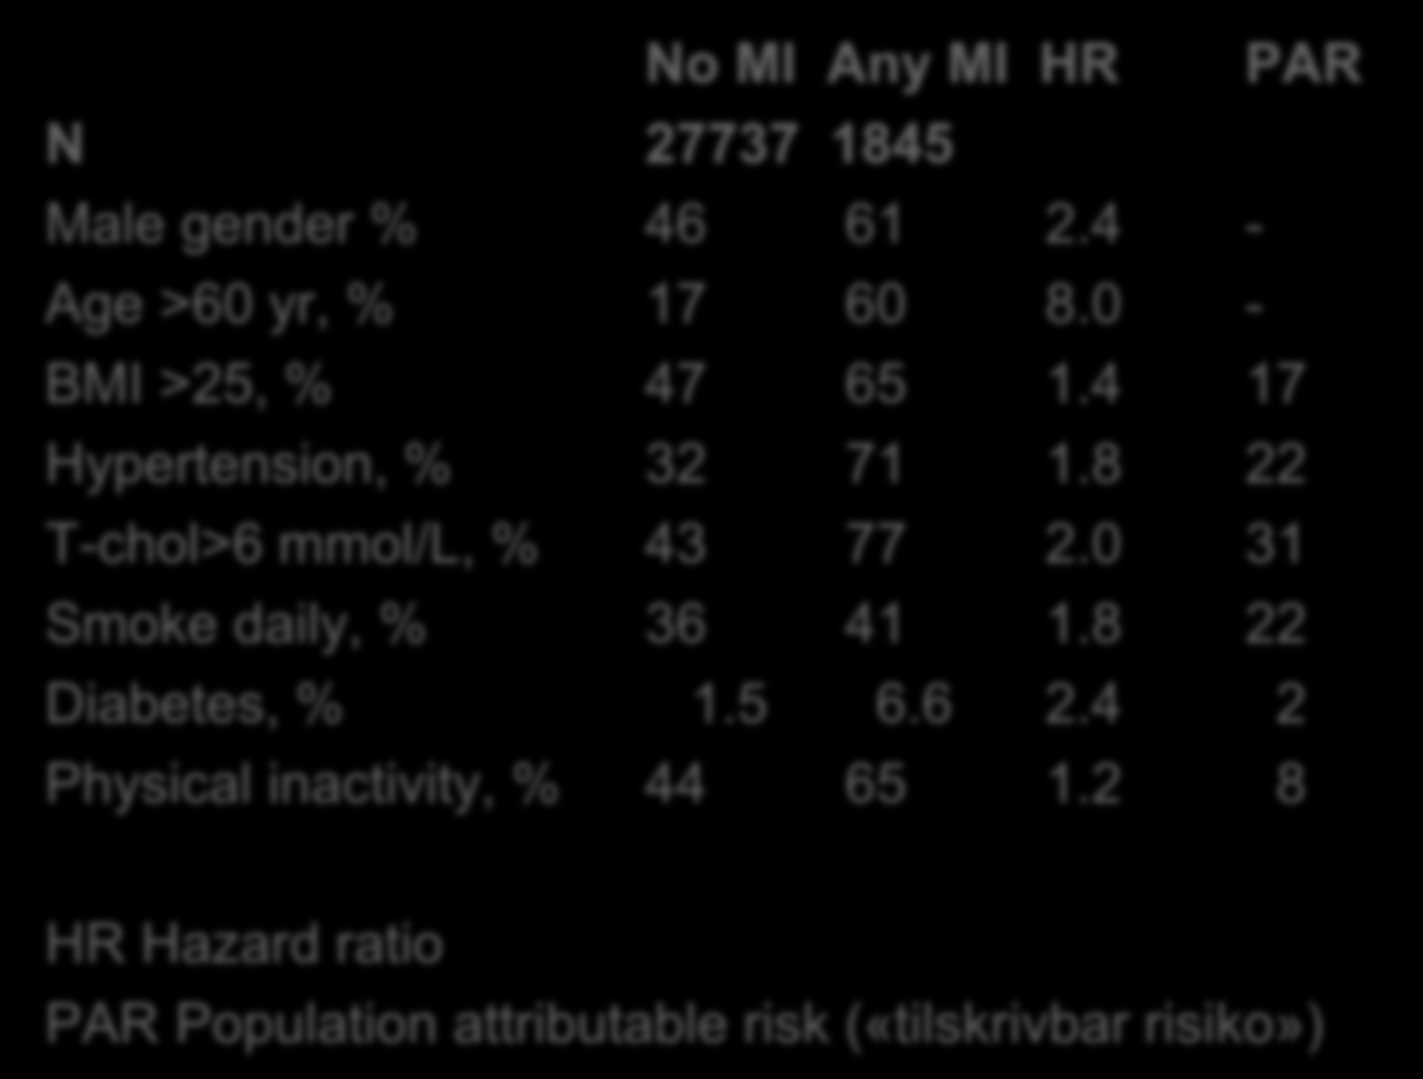 Risk factors for MI. The Tromsø study. N=29582 No MI Any MI HR PAR N 27737 1845 Male gender % 46 61 2.4 - Age >60 yr, % 17 60 8.0 - BMI >25, % 47 65 1.4 17 Hypertension, % 32 71 1.